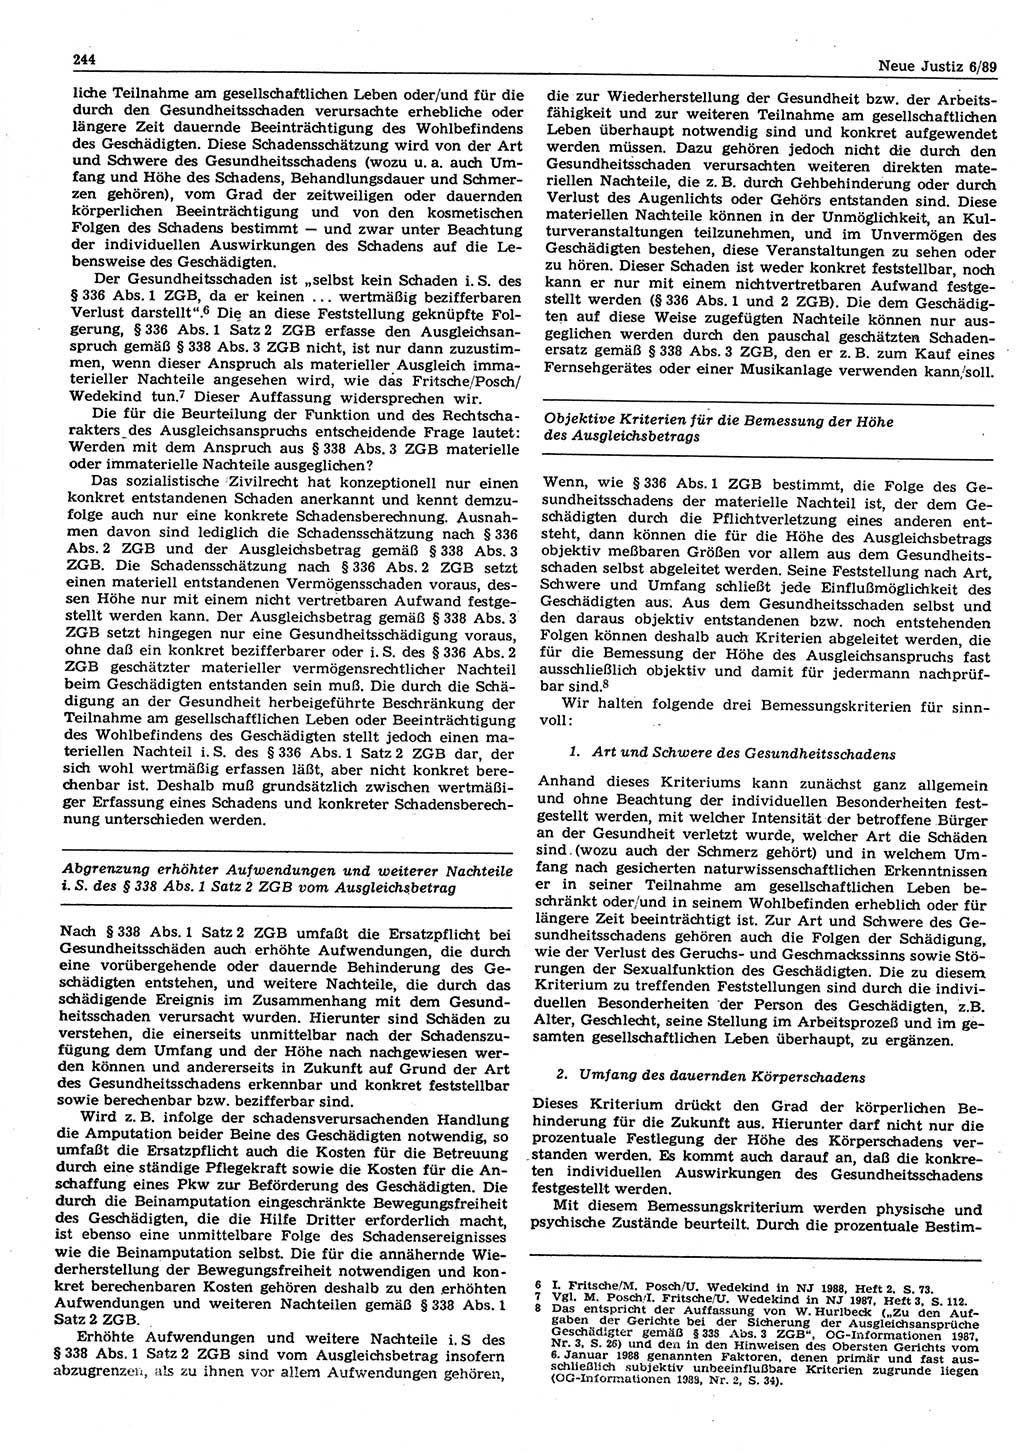 Neue Justiz (NJ), Zeitschrift für sozialistisches Recht und Gesetzlichkeit [Deutsche Demokratische Republik (DDR)], 43. Jahrgang 1989, Seite 244 (NJ DDR 1989, S. 244)